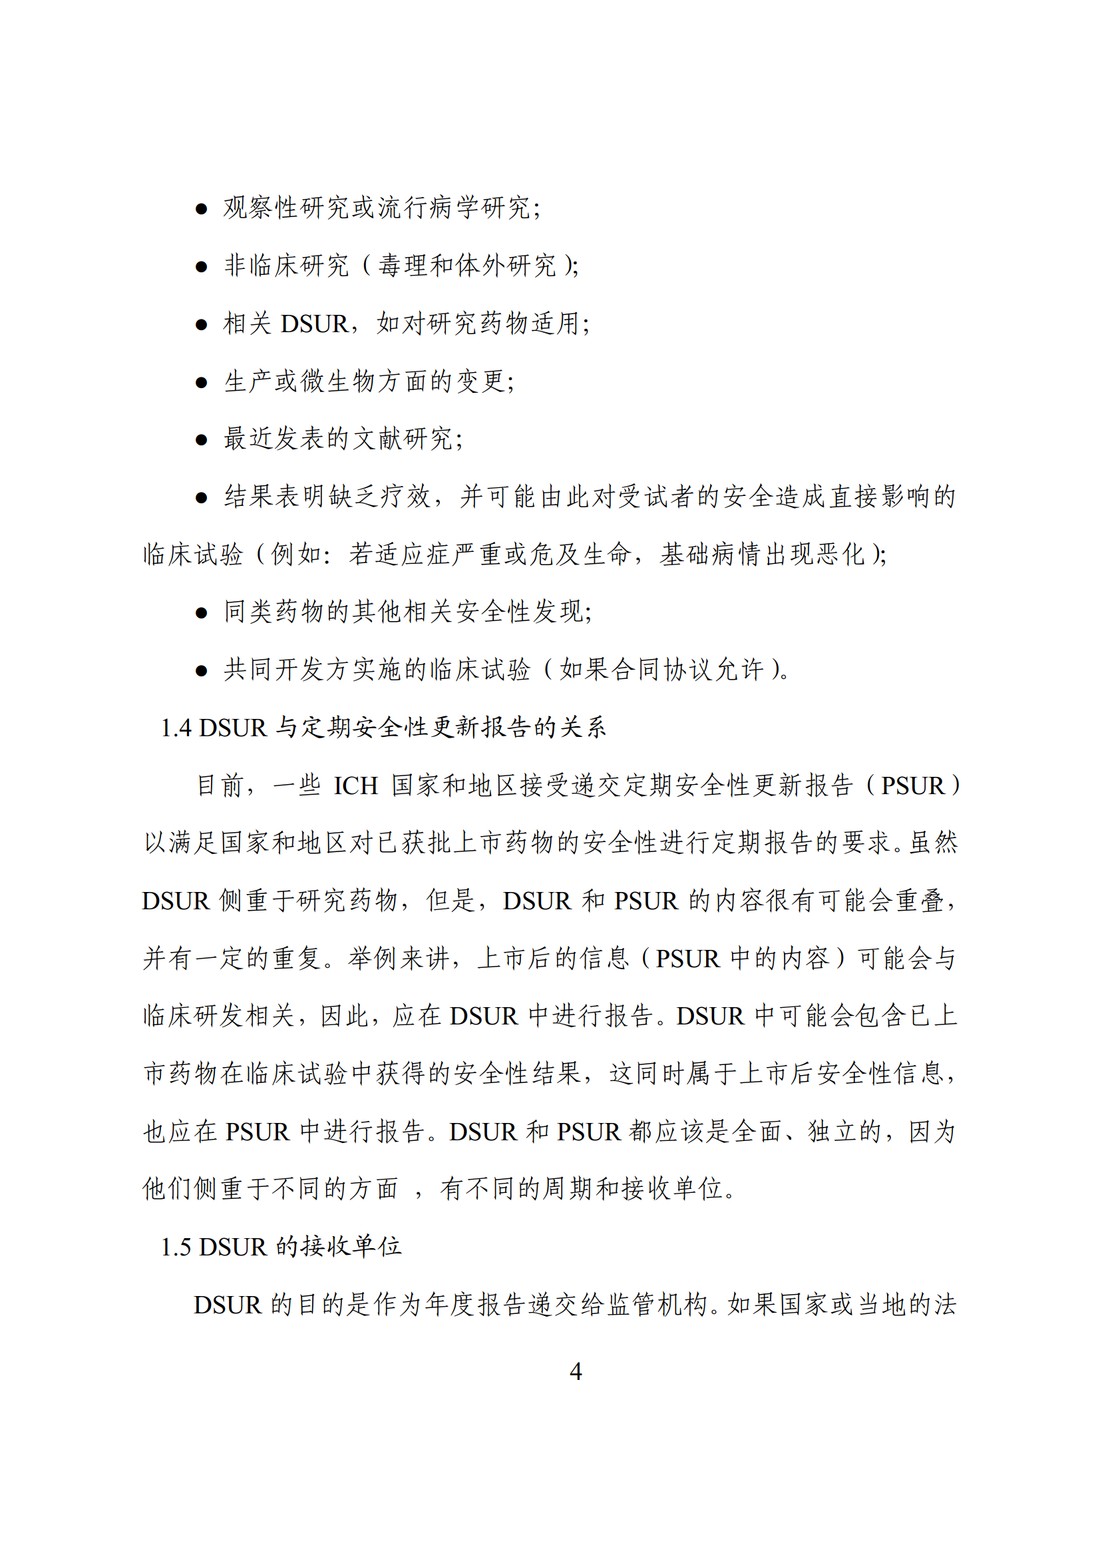 E2F 研发期间安全性更新报告(中文翻译公开征求意见稿)_09.jpg